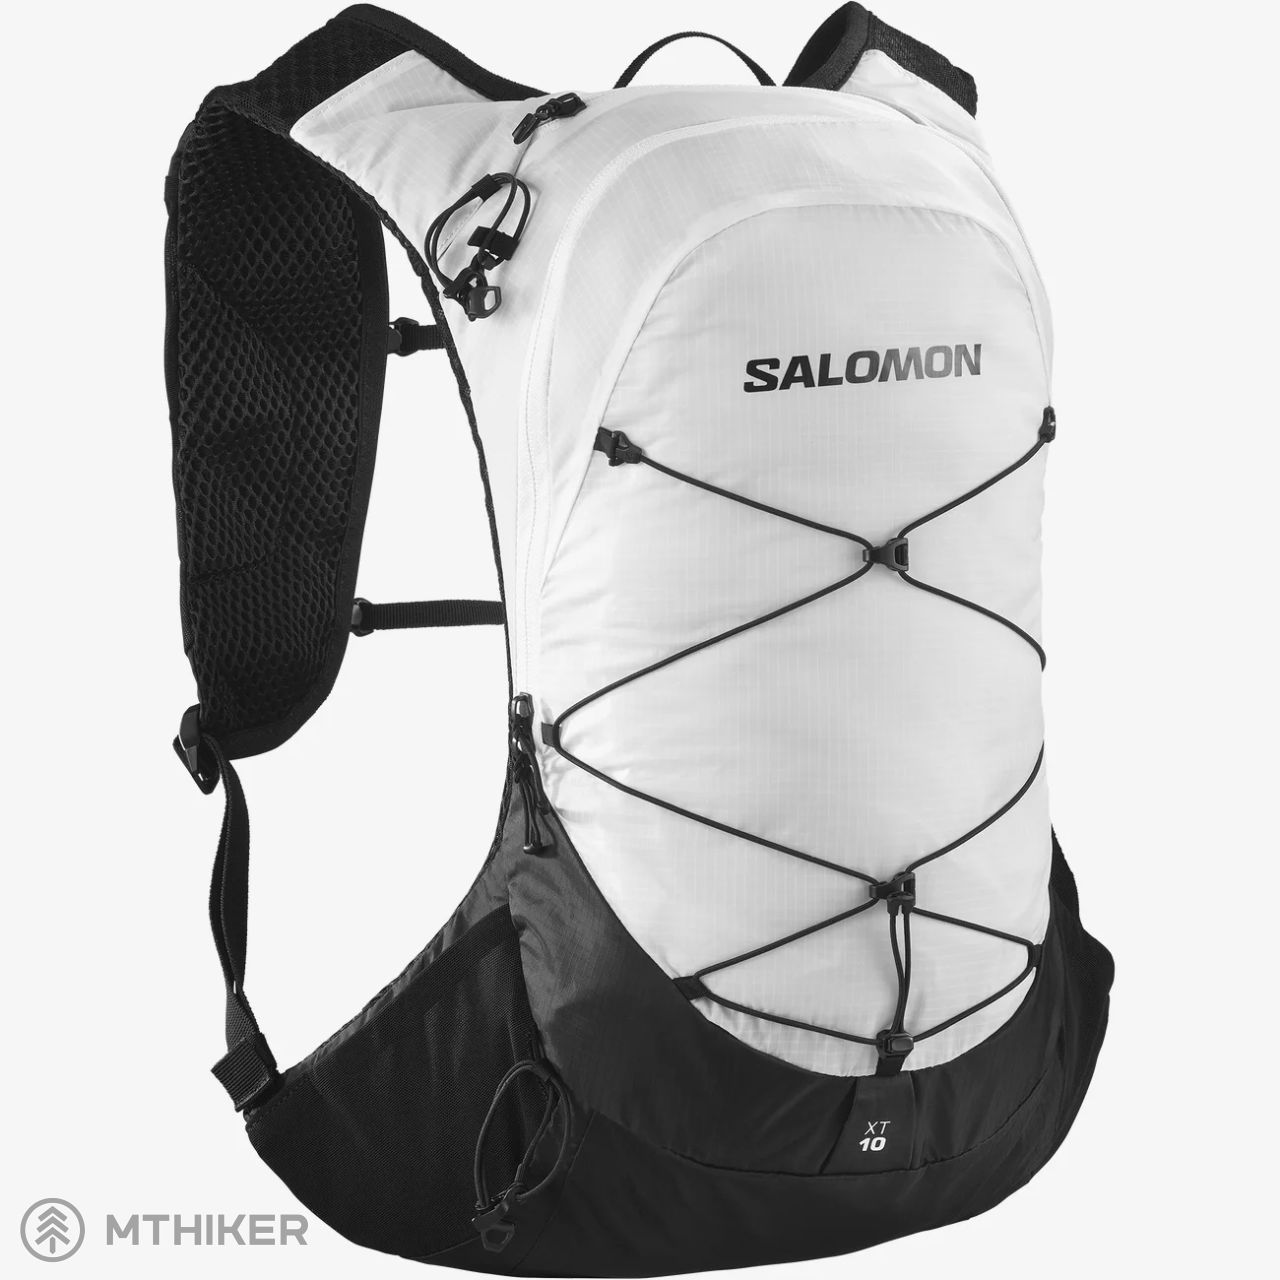 Salomon XT 10 backpack, 10 l, white/black